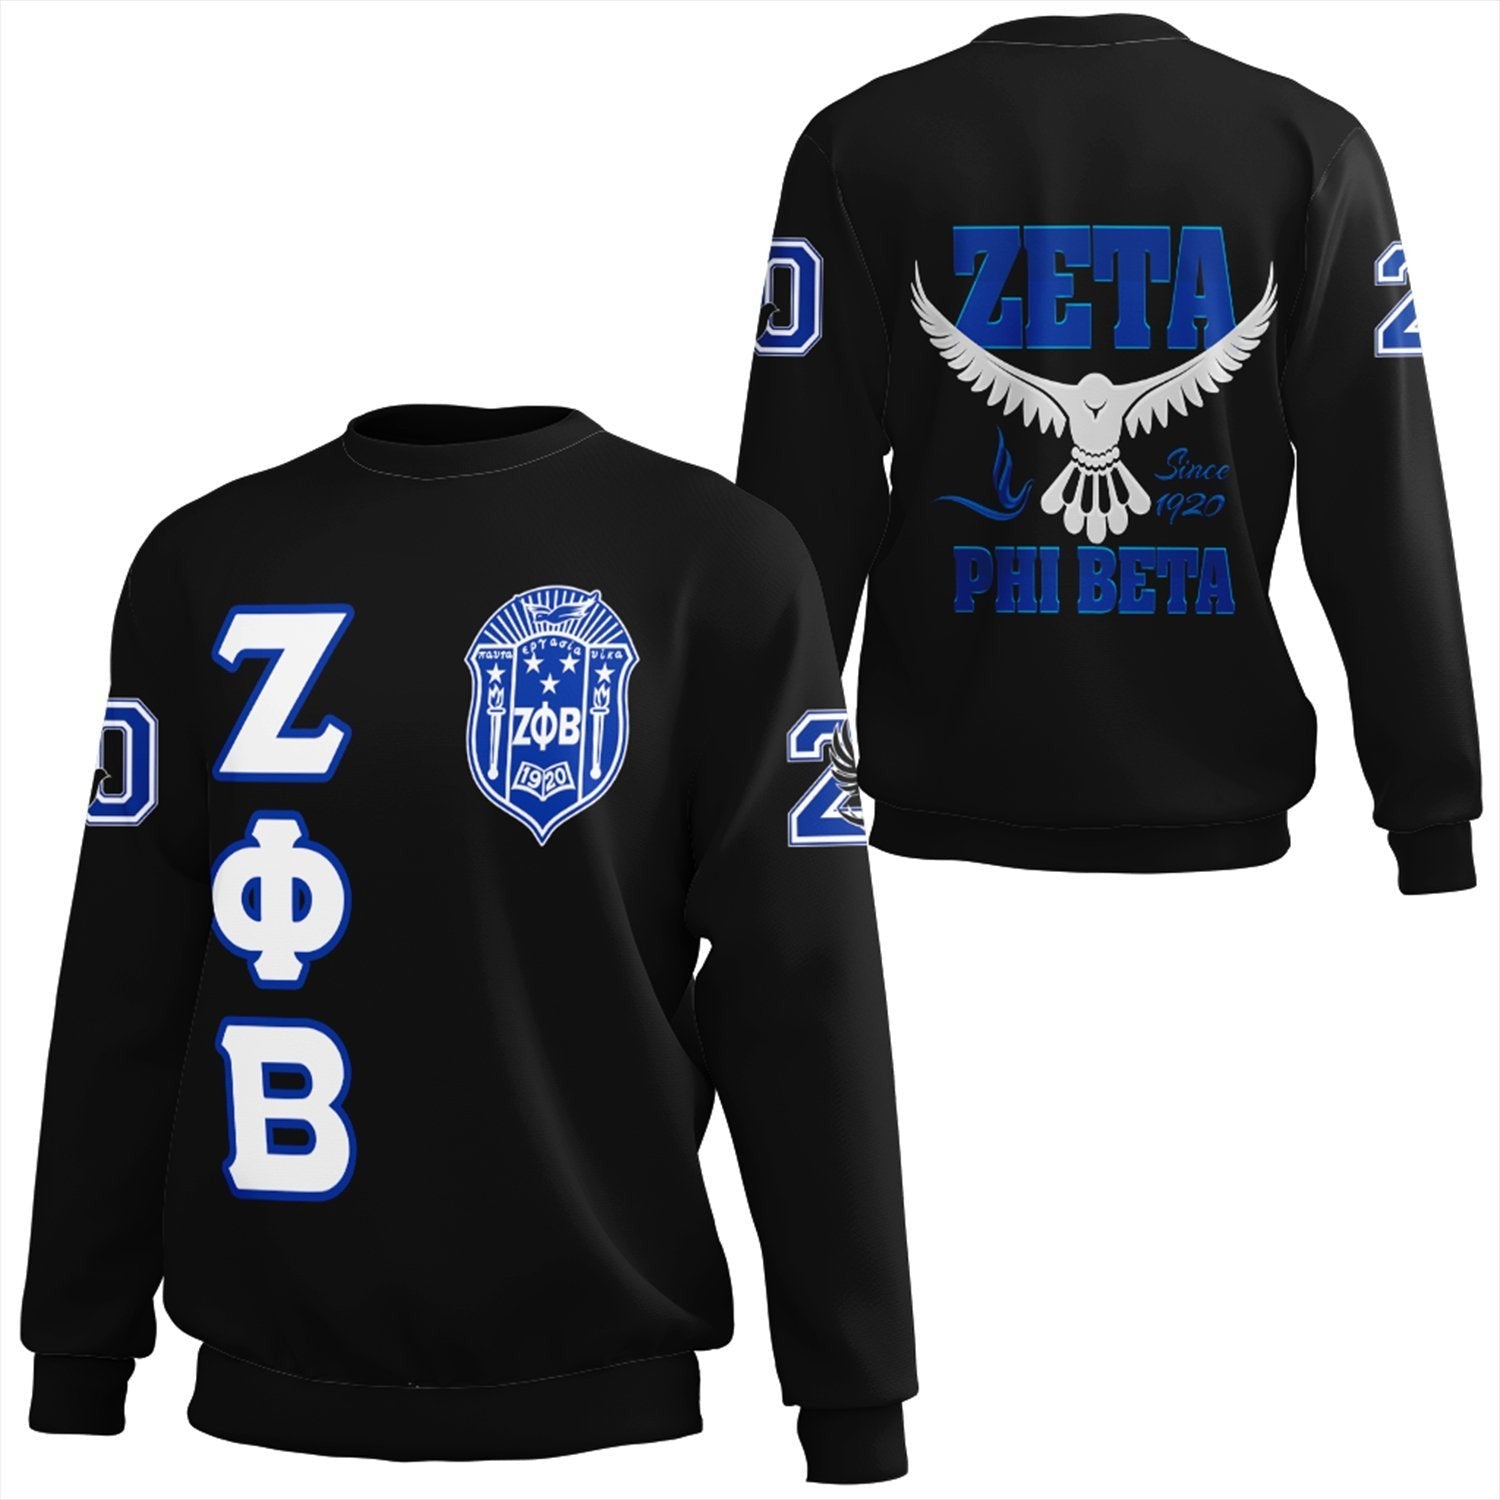 Sorority Sweatshirt - Zeta Phi Beta Letters Sweatshirt